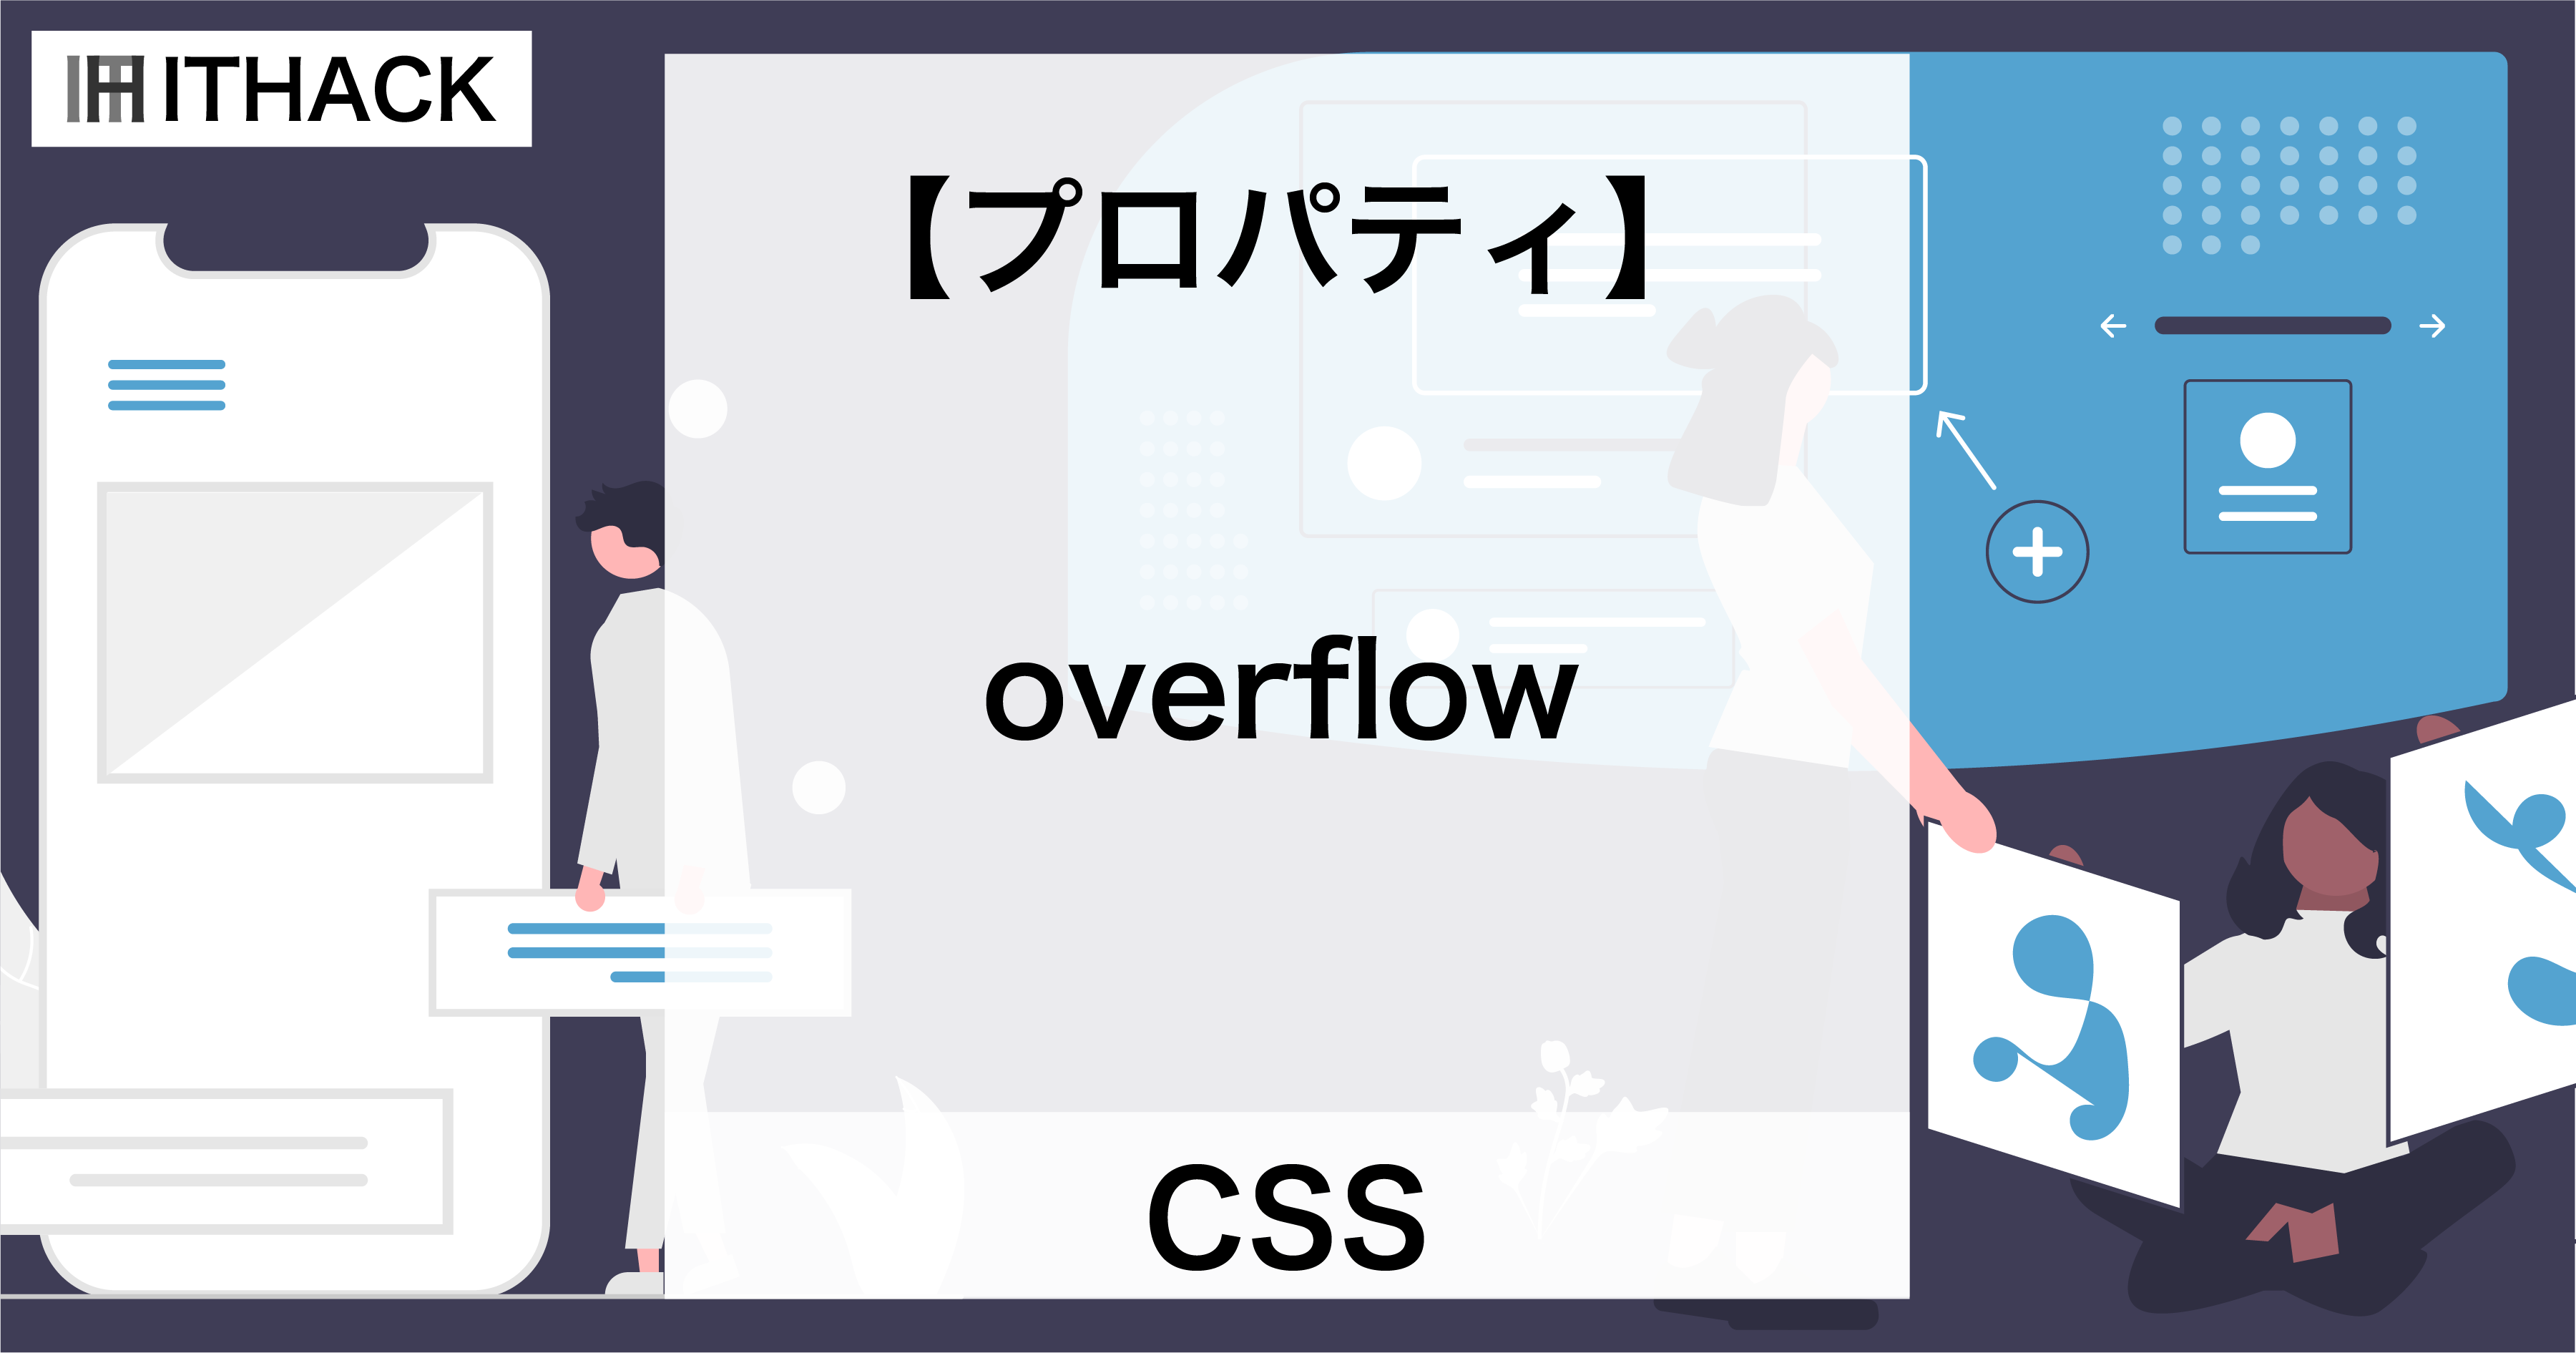 【CSS】overflow - 領域から出たコンテンツの振る舞い